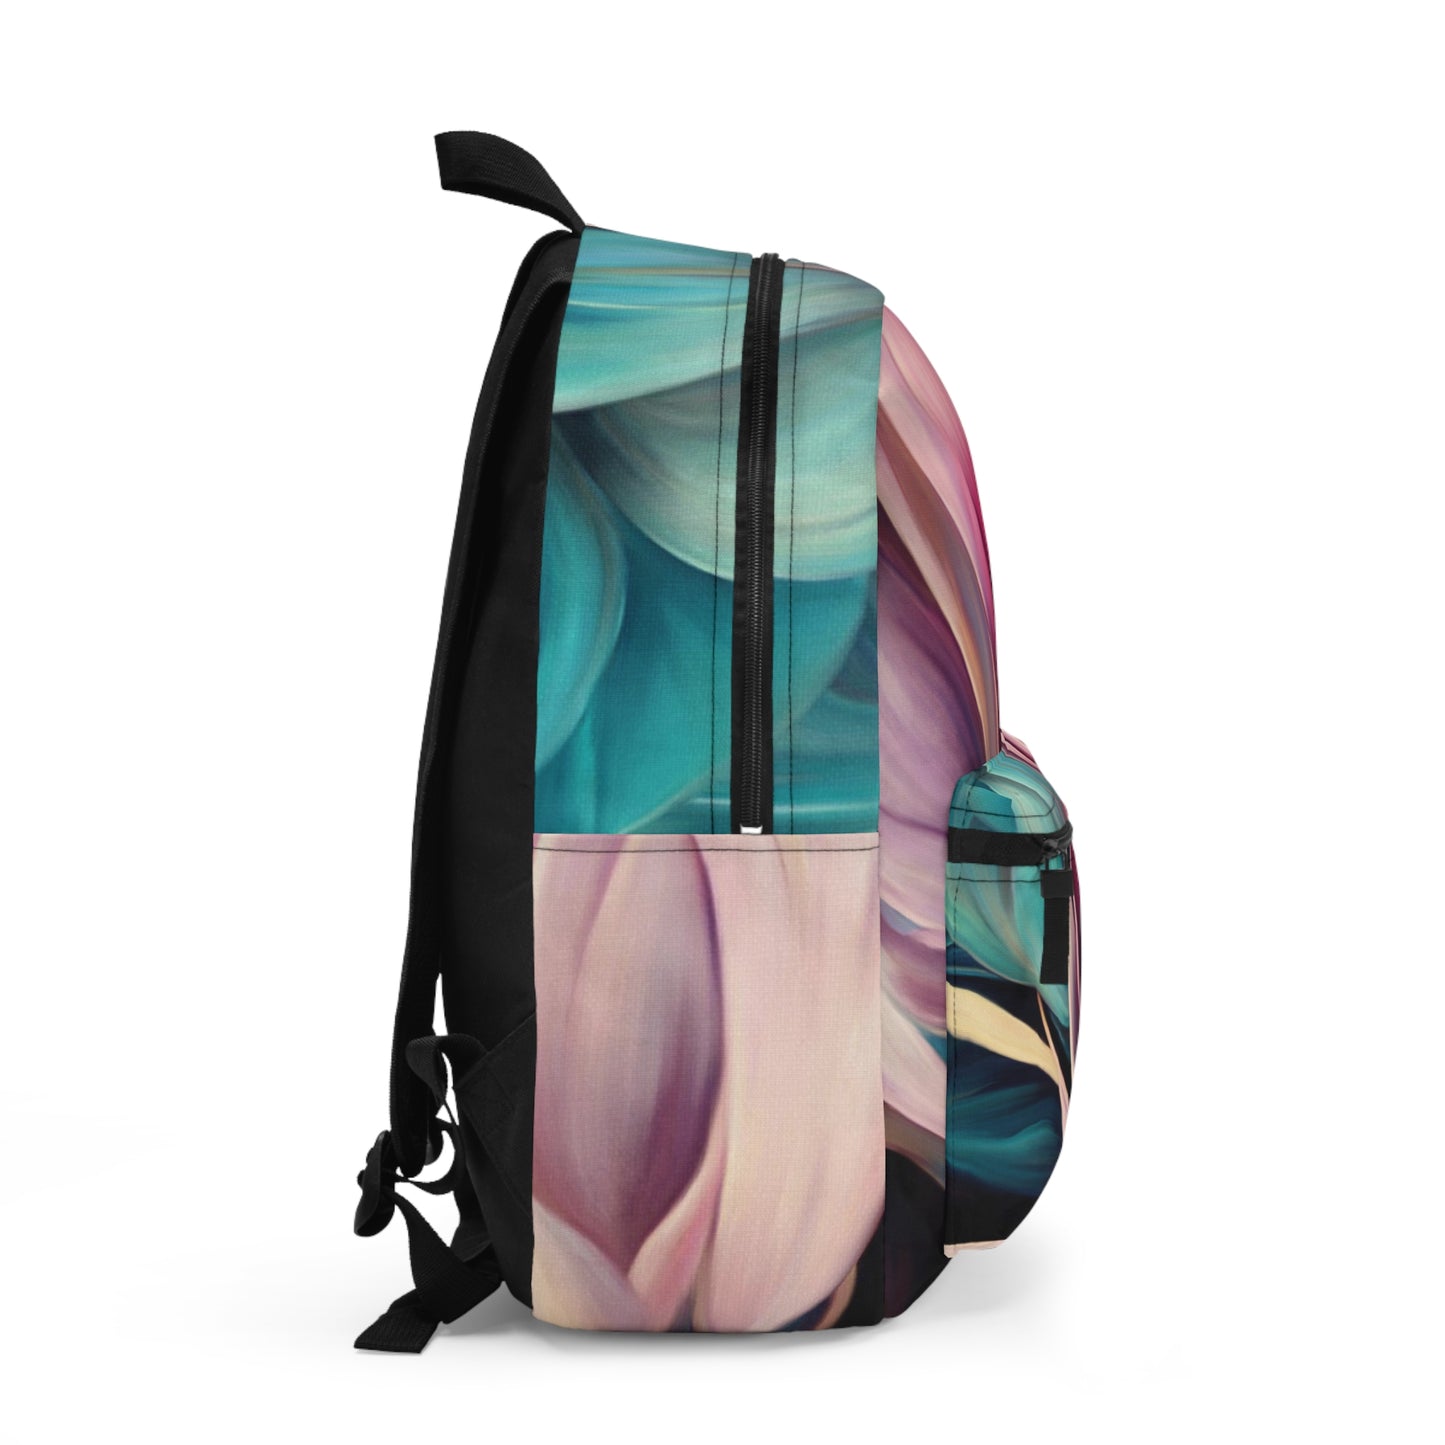 Cordyline Bolero Backpack